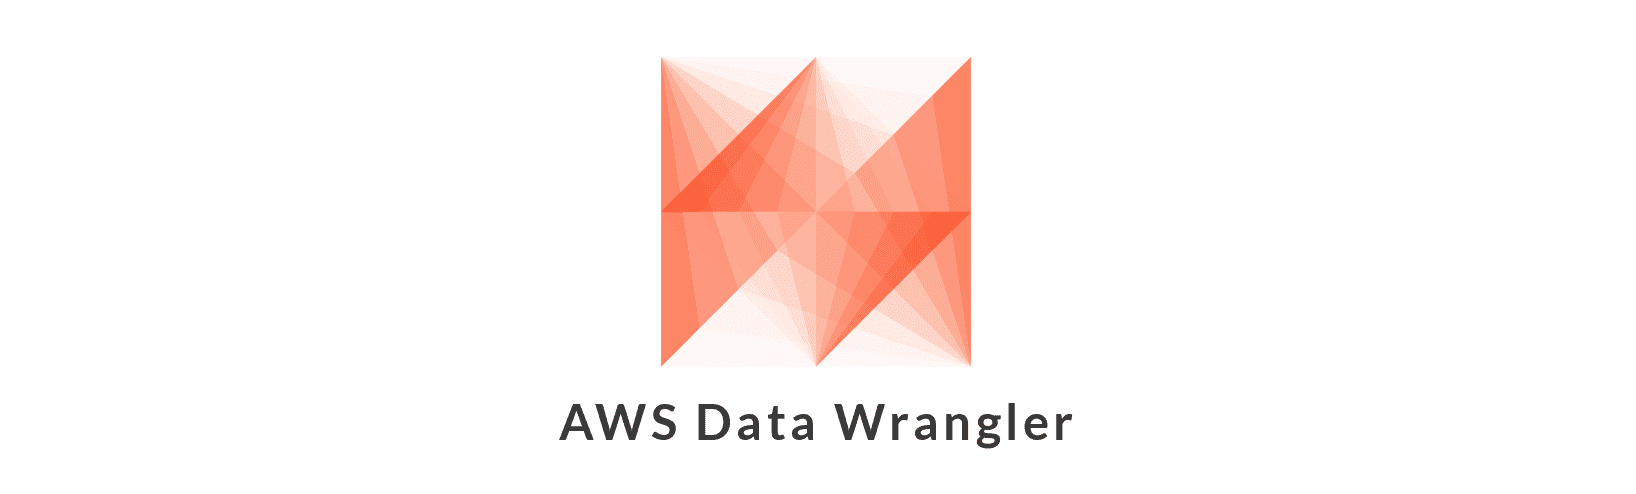 AWS Data Wrangler